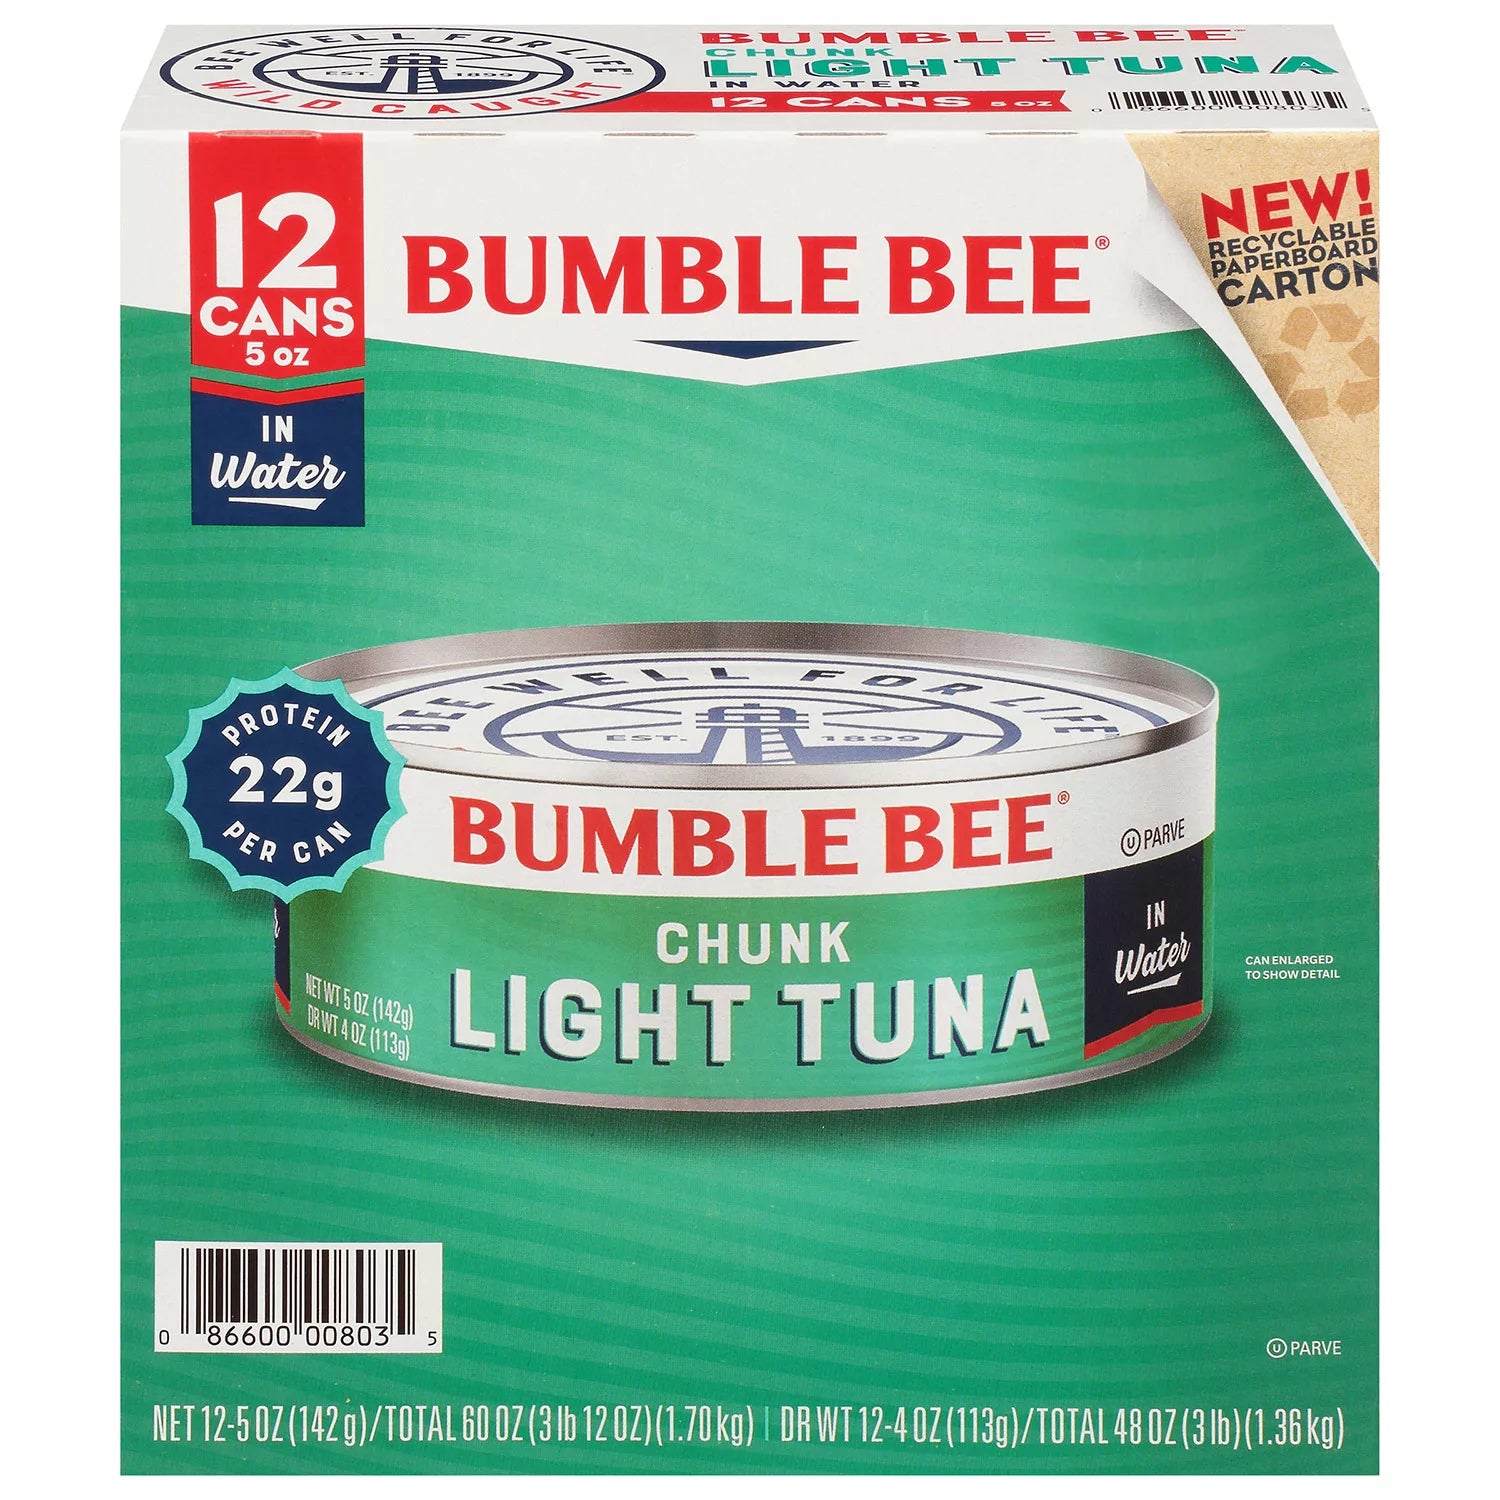 Bumble Bee Chunk Light Tuna in Water - 5 oz/12pk